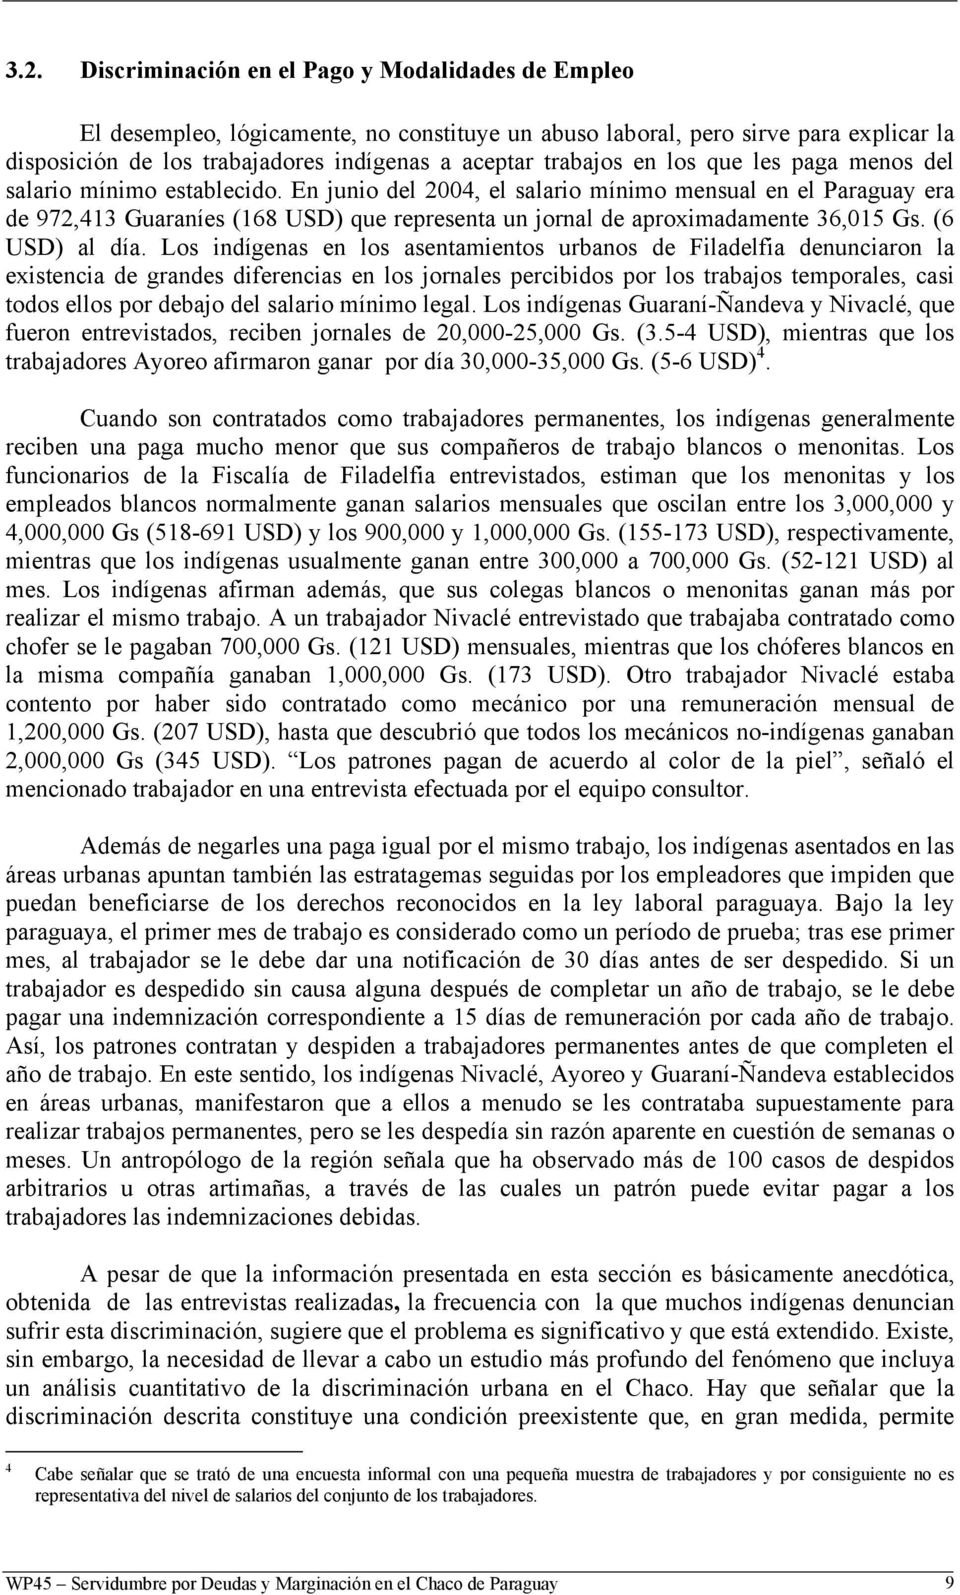 En junio del 2004, el salario mínimo mensual en el Paraguay era de 972,413 Guaraníes (168 USD) que representa un jornal de aproximadamente 36,015 Gs. (6 USD) al día.